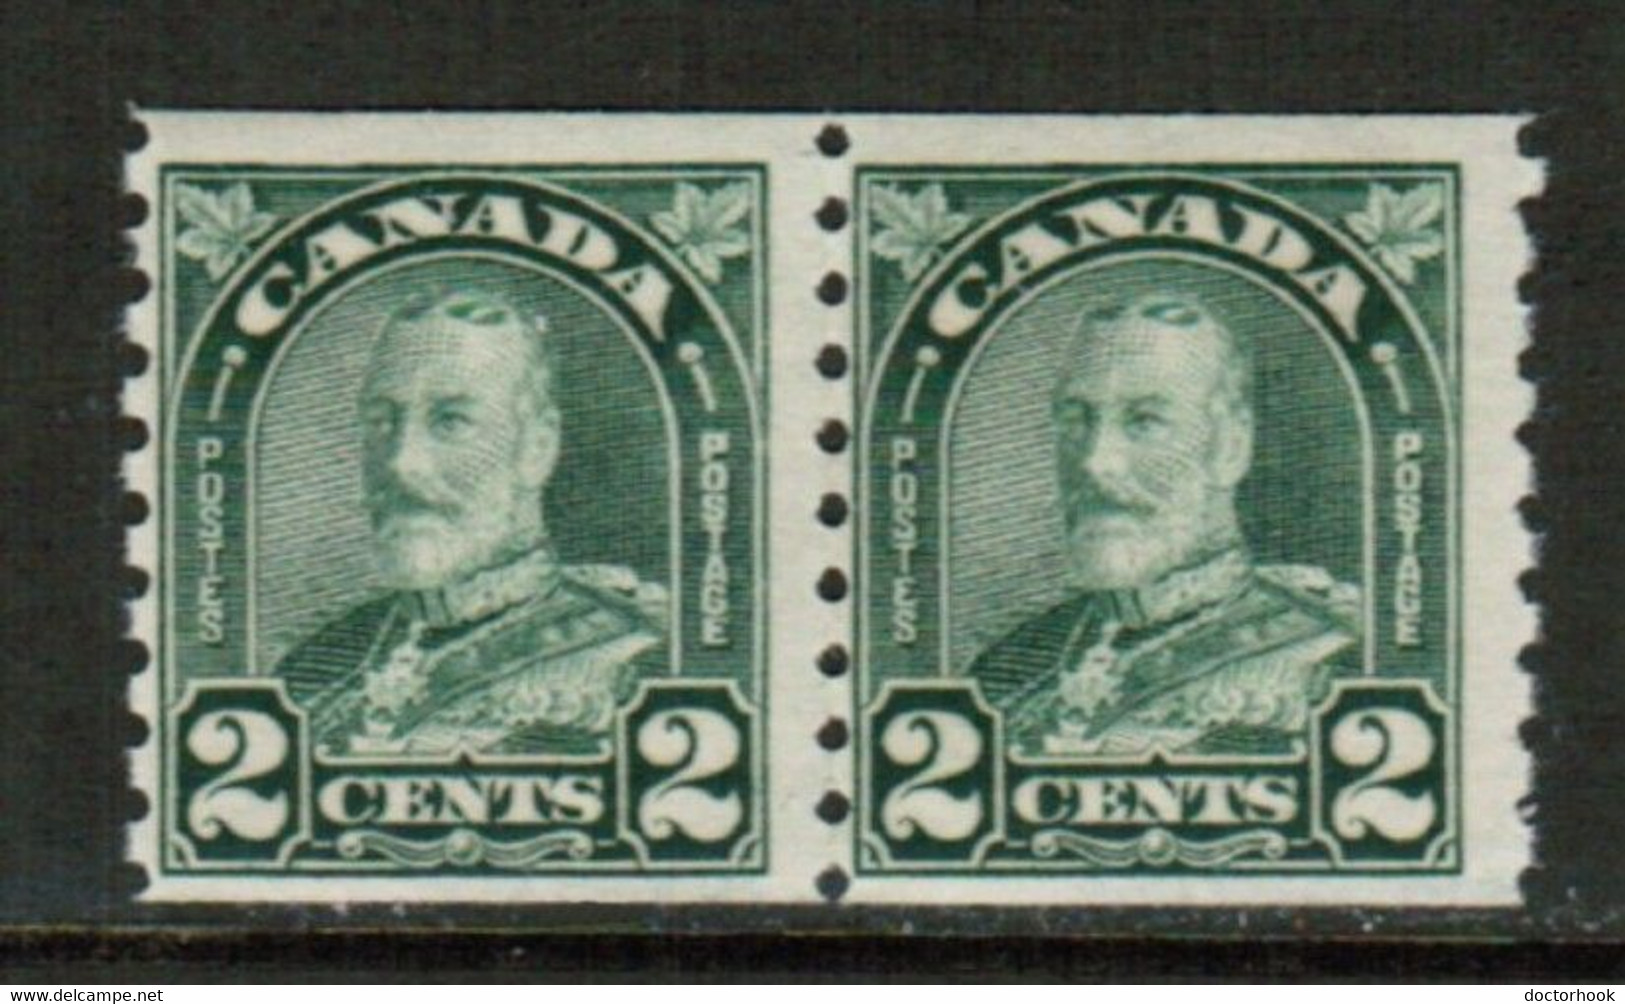 CANADA  Scott # 180* F-VF MINT LH PAIR (Stamp Scan # 783) - Francobolli In Bobina